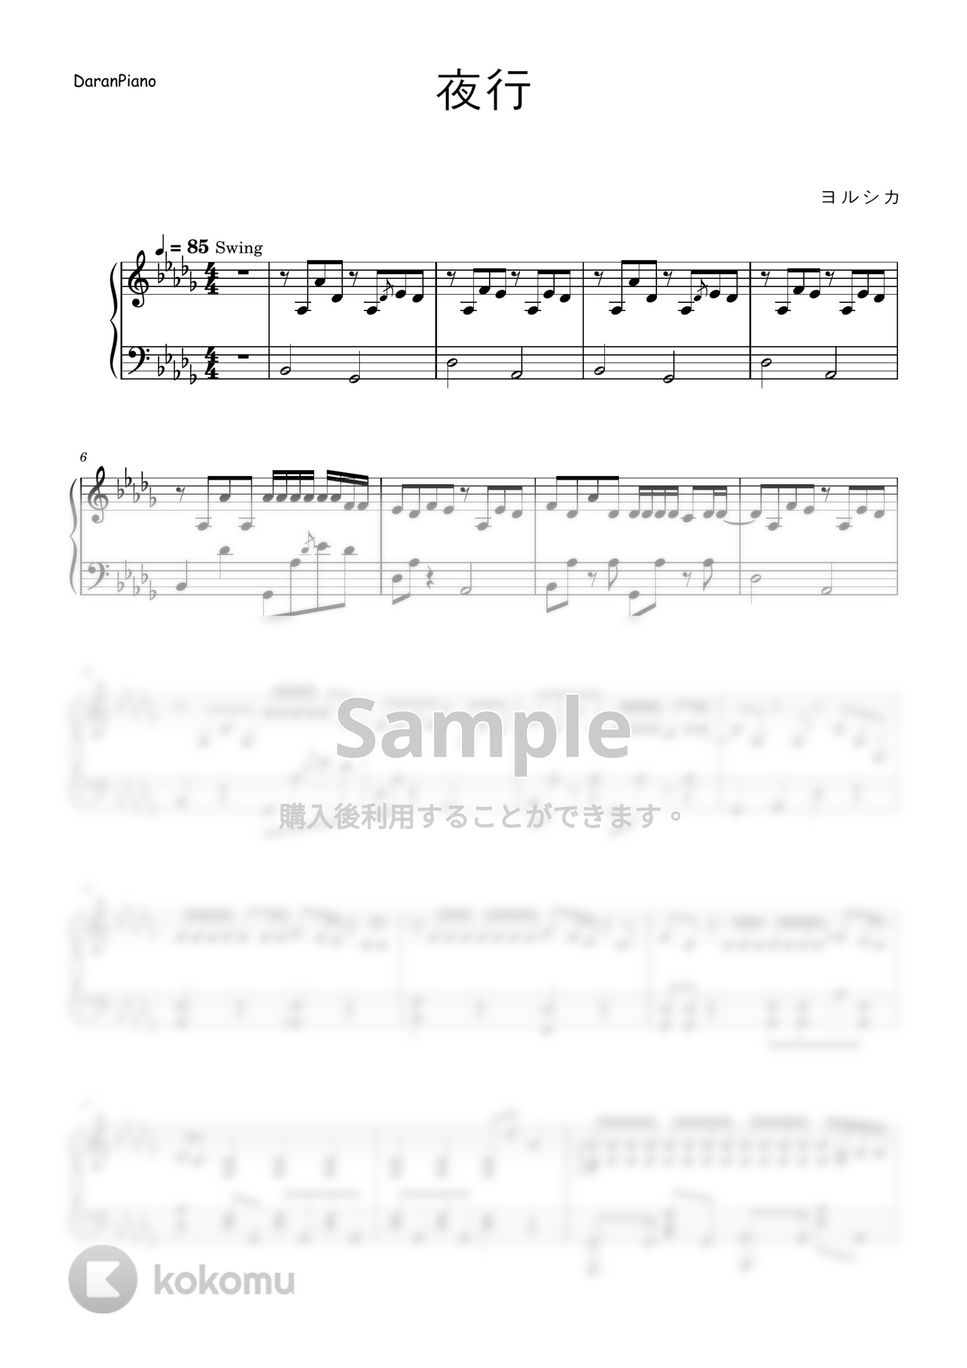 ヨルシカ - 夜行 (泣きたい私は猫をかぶる OST) by DaranPiano